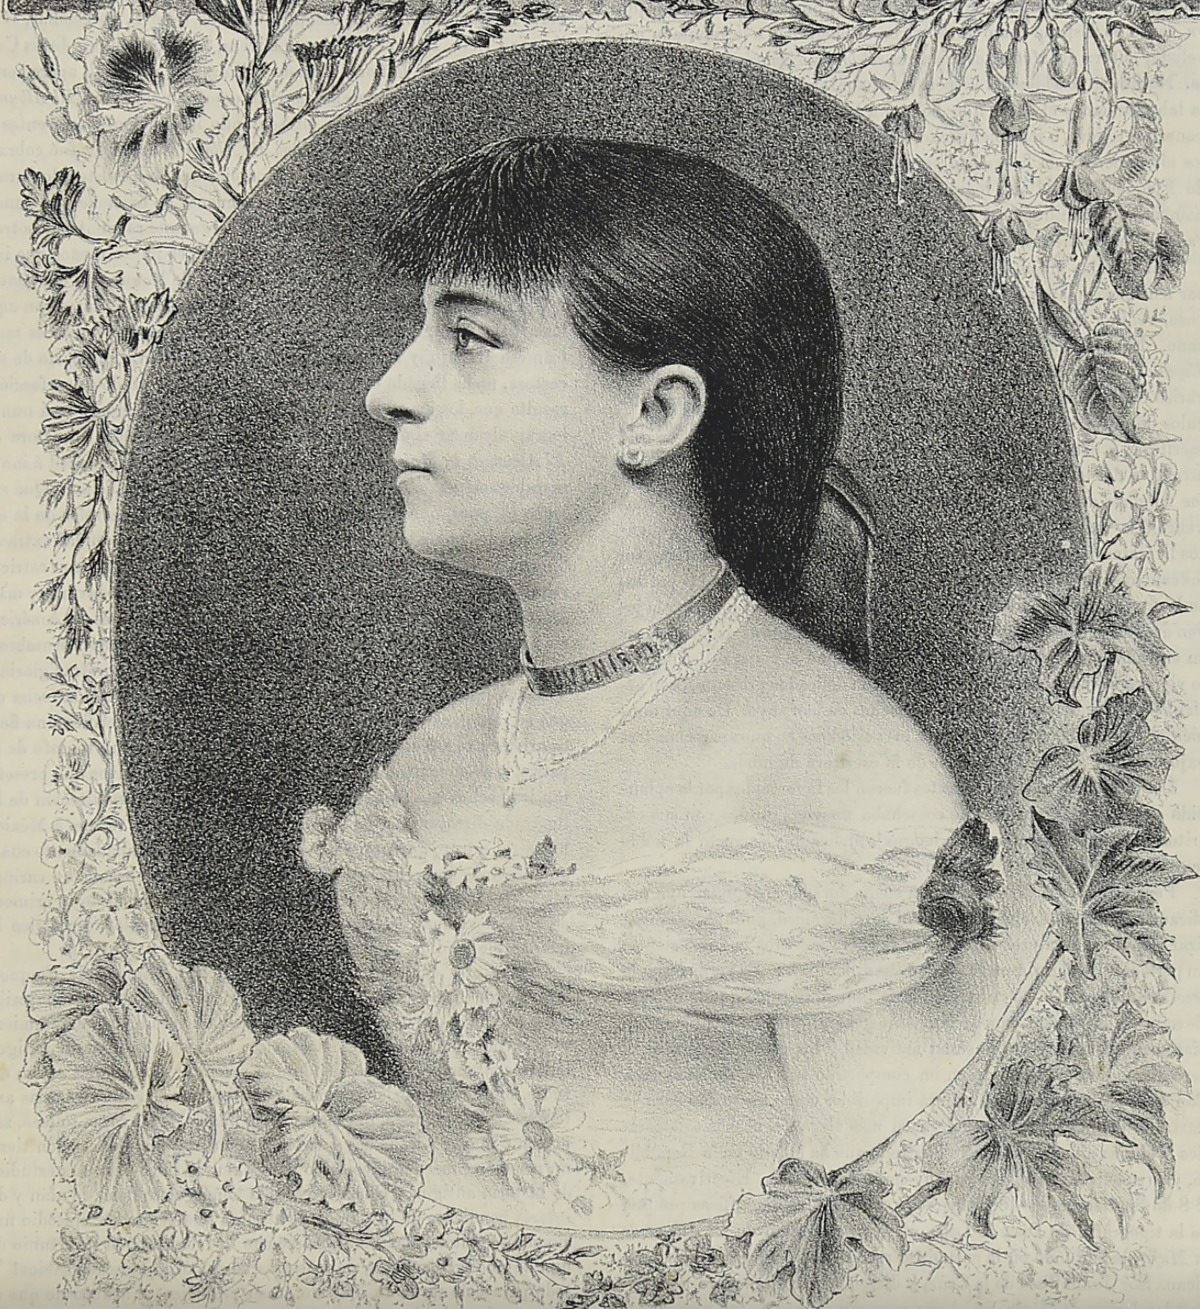 Concepción Gimeno de Flaquer. Fuente: El Álbum de la Mujer, año 7, t. 13, n.º 1 (7/7/1889), cubierta.